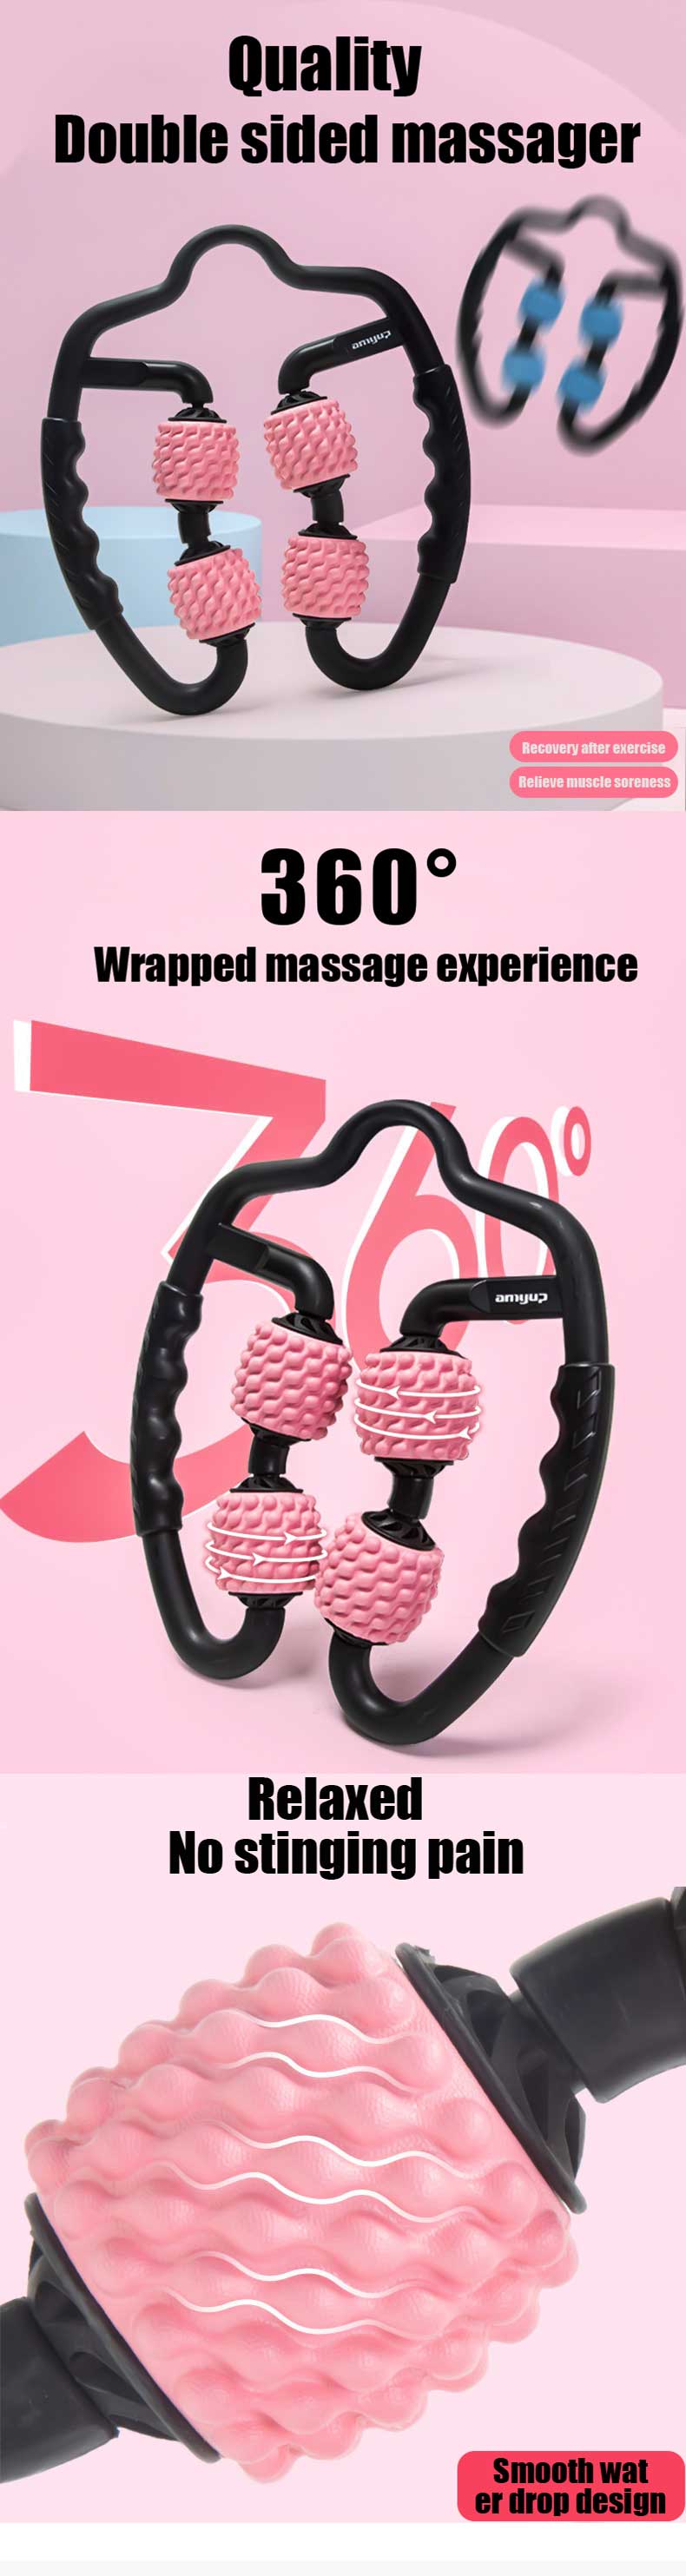 U Shape Trigger Point Massage Roller for Arm Leg Shop kitchen home